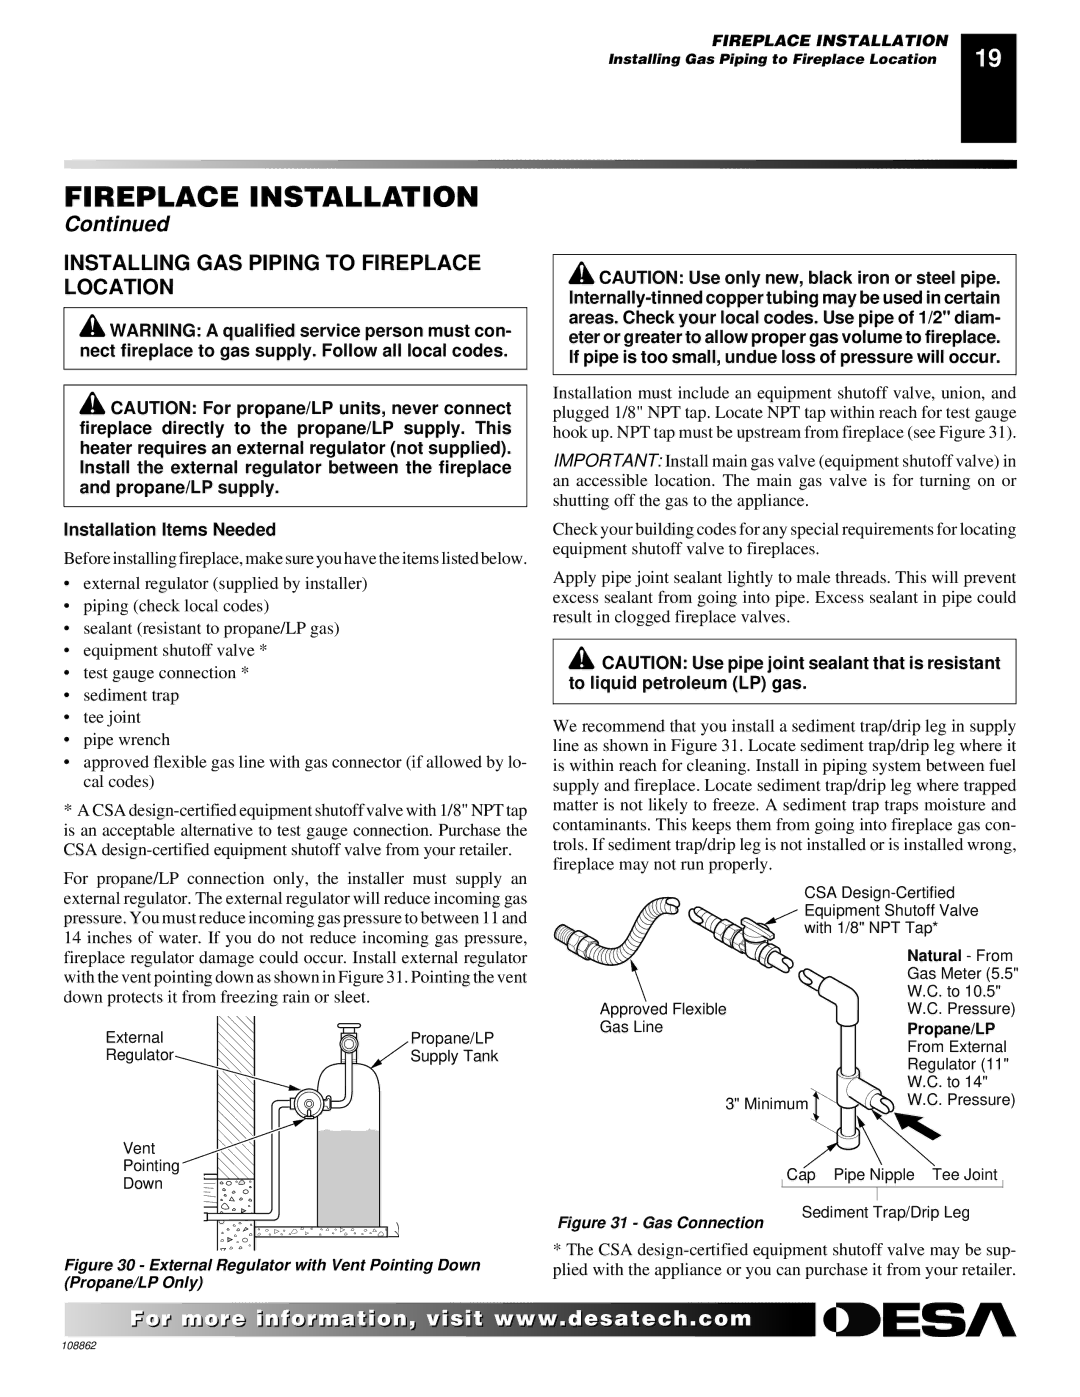 Desa (V)V36EN installation manual Installing GAS Piping to Fireplace Location, Installation Items Needed 